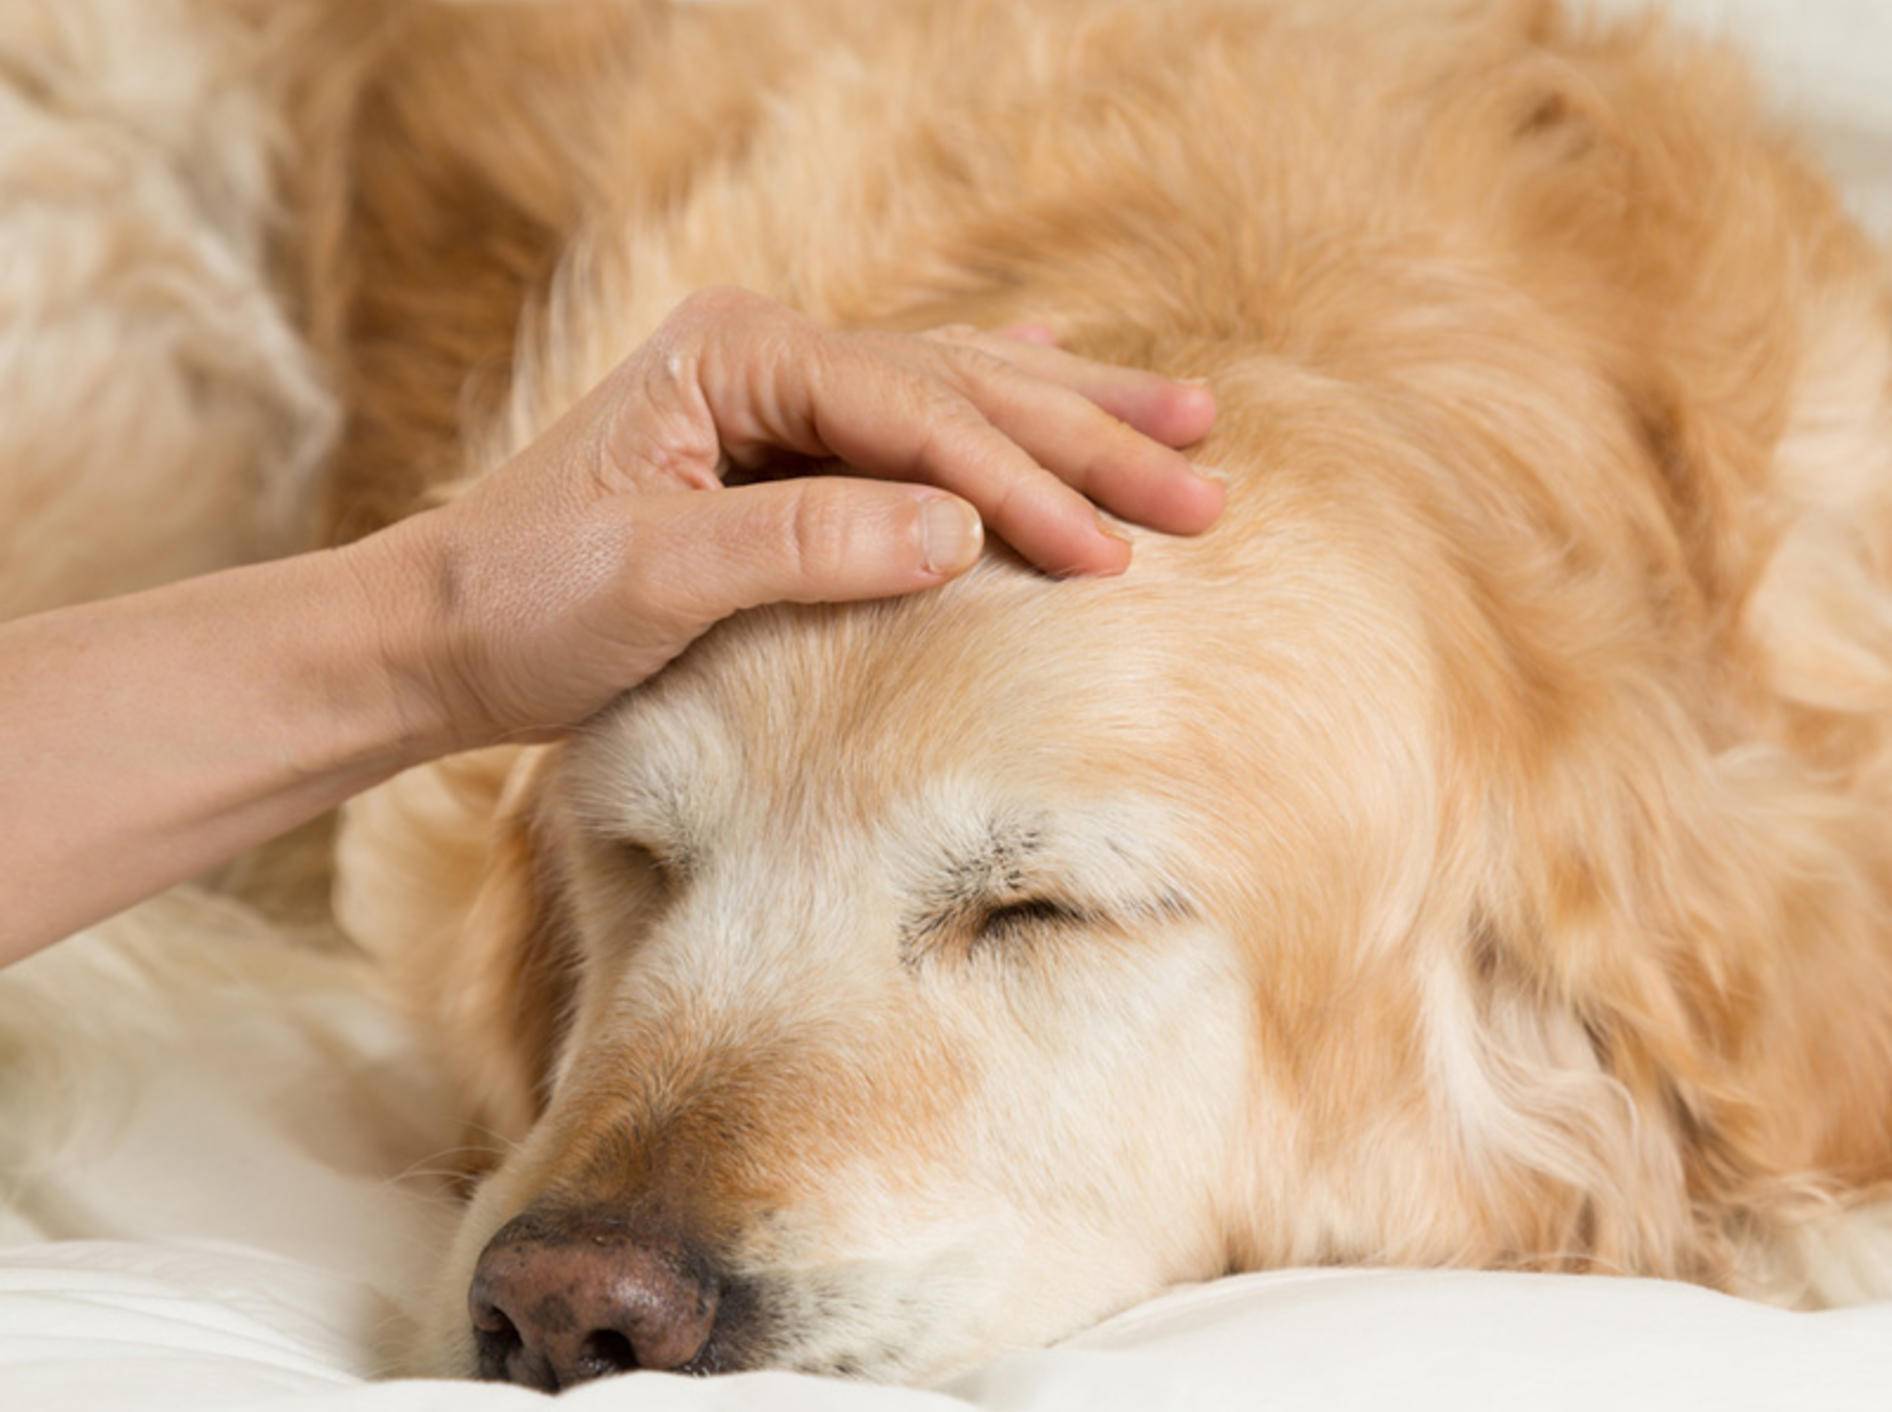 Fiebermessen beim Hund ist wichtig, wenn der Vierbeiner müde und apathisch wirkt – 135pixels / Shutterstock